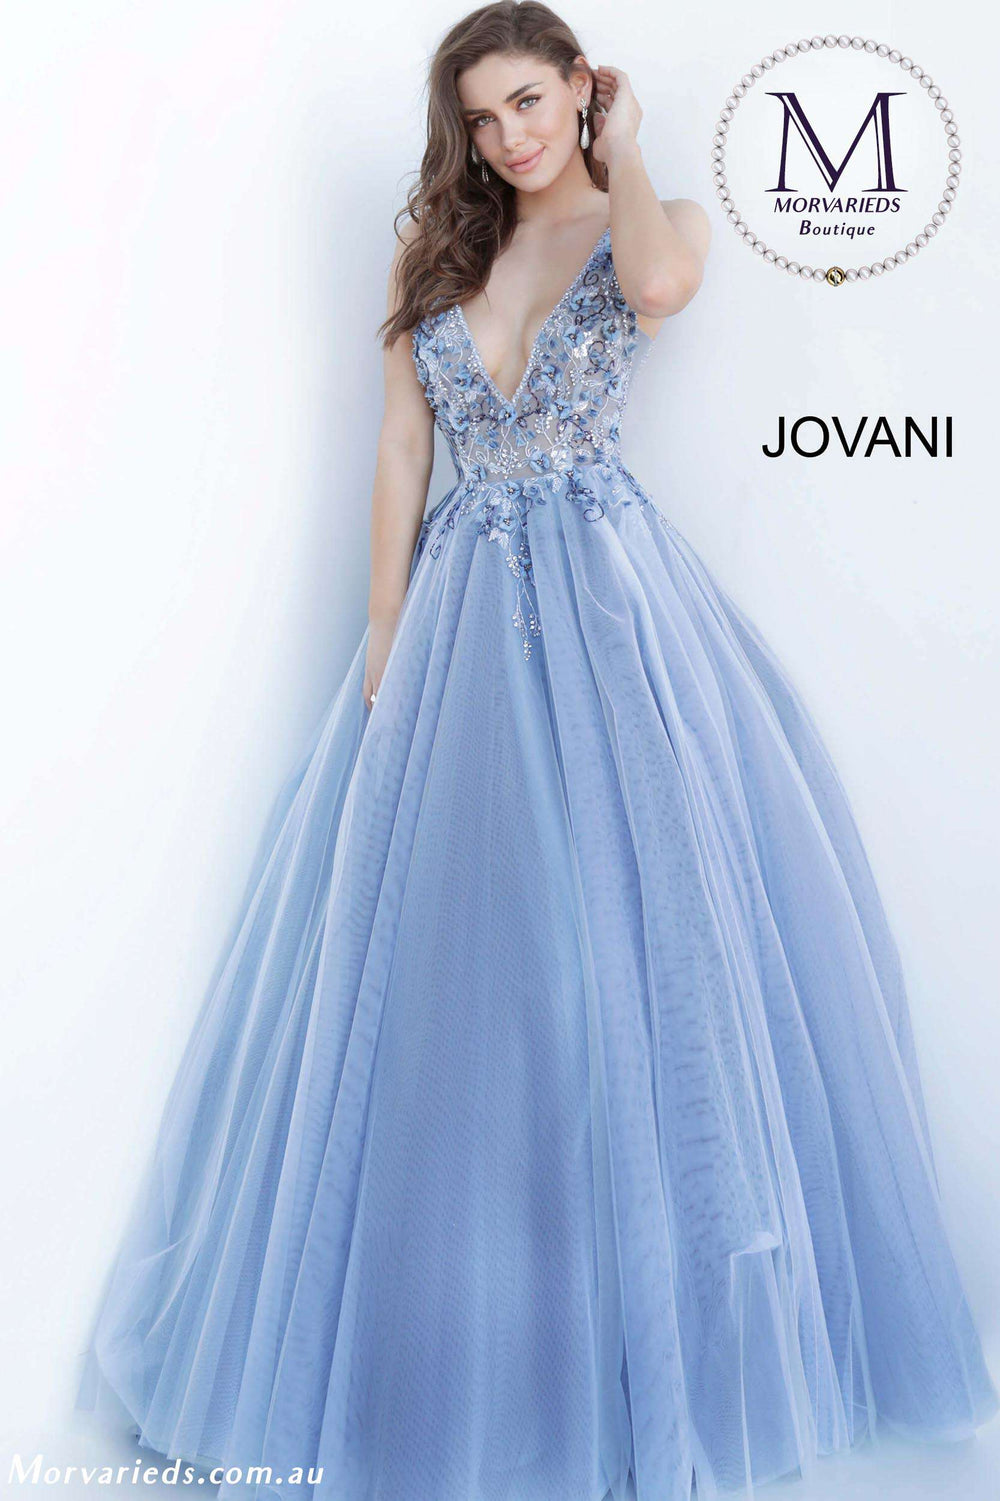 Floral Embellished Prom Ballgown Jovani 3110 - Morvarieds Fashion